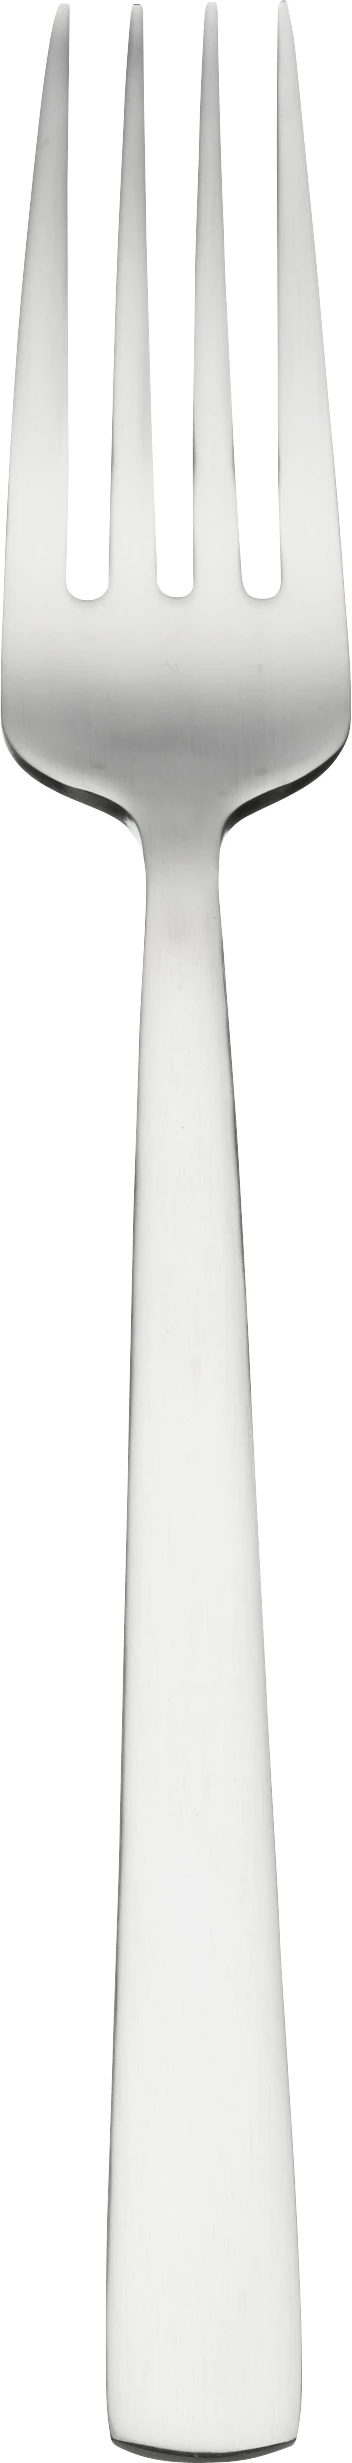 Amefa Ventura frokostgaffel, 19 cm